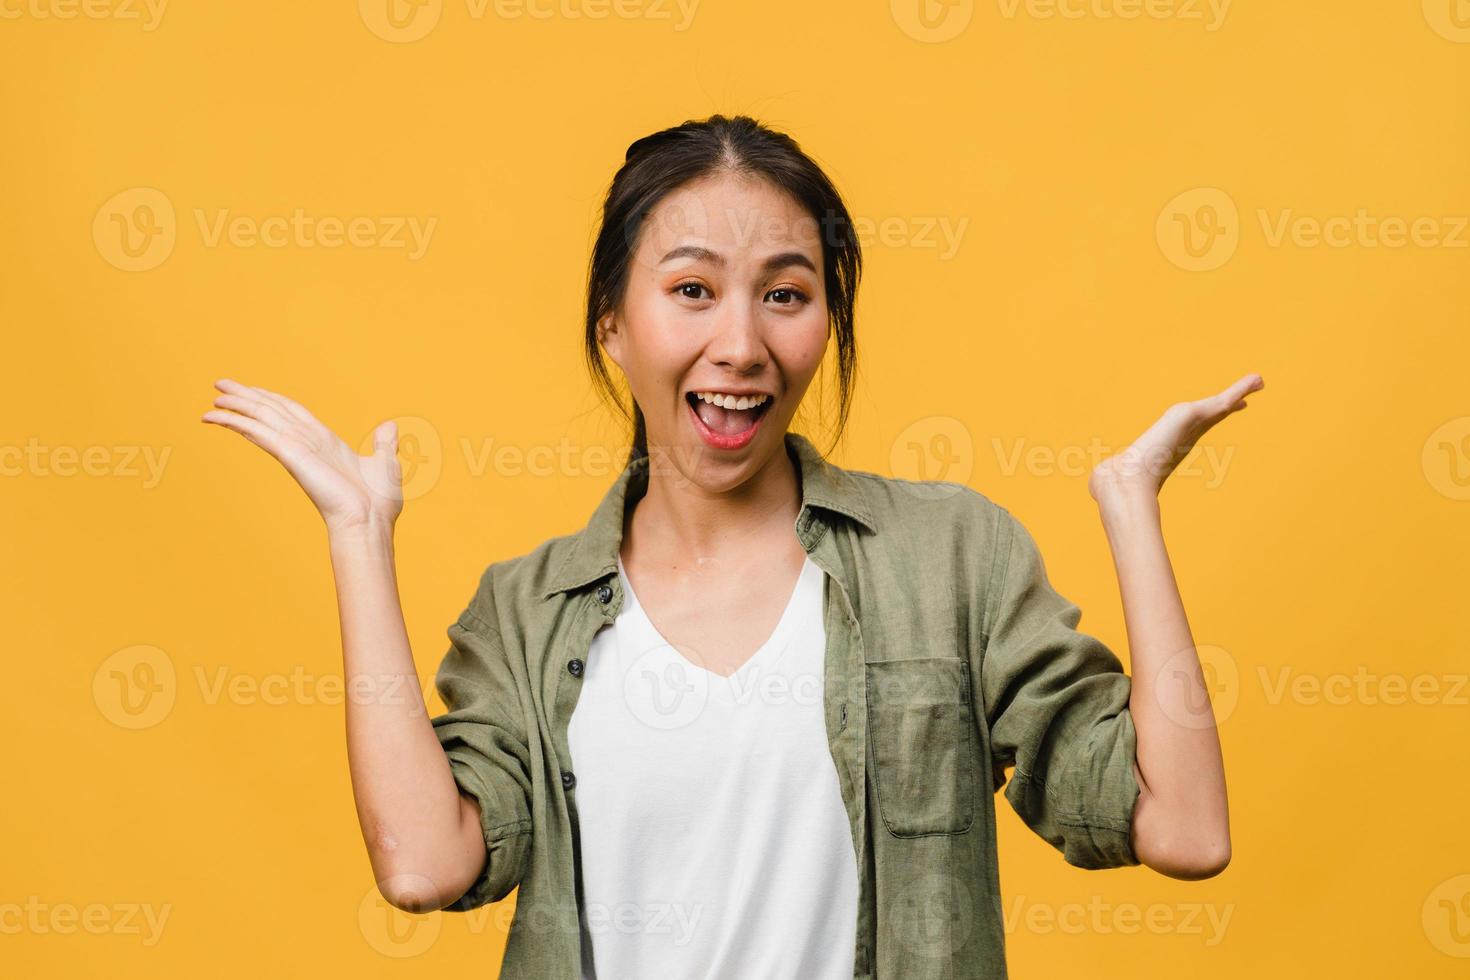 jonge Aziatische dame voelt geluk met positieve uitdrukking, vrolijke verrassing funky, gekleed in casual doek en kijkend naar camera geïsoleerd op gele achtergrond. gelukkige schattige blije vrouw verheugt zich over succes. foto